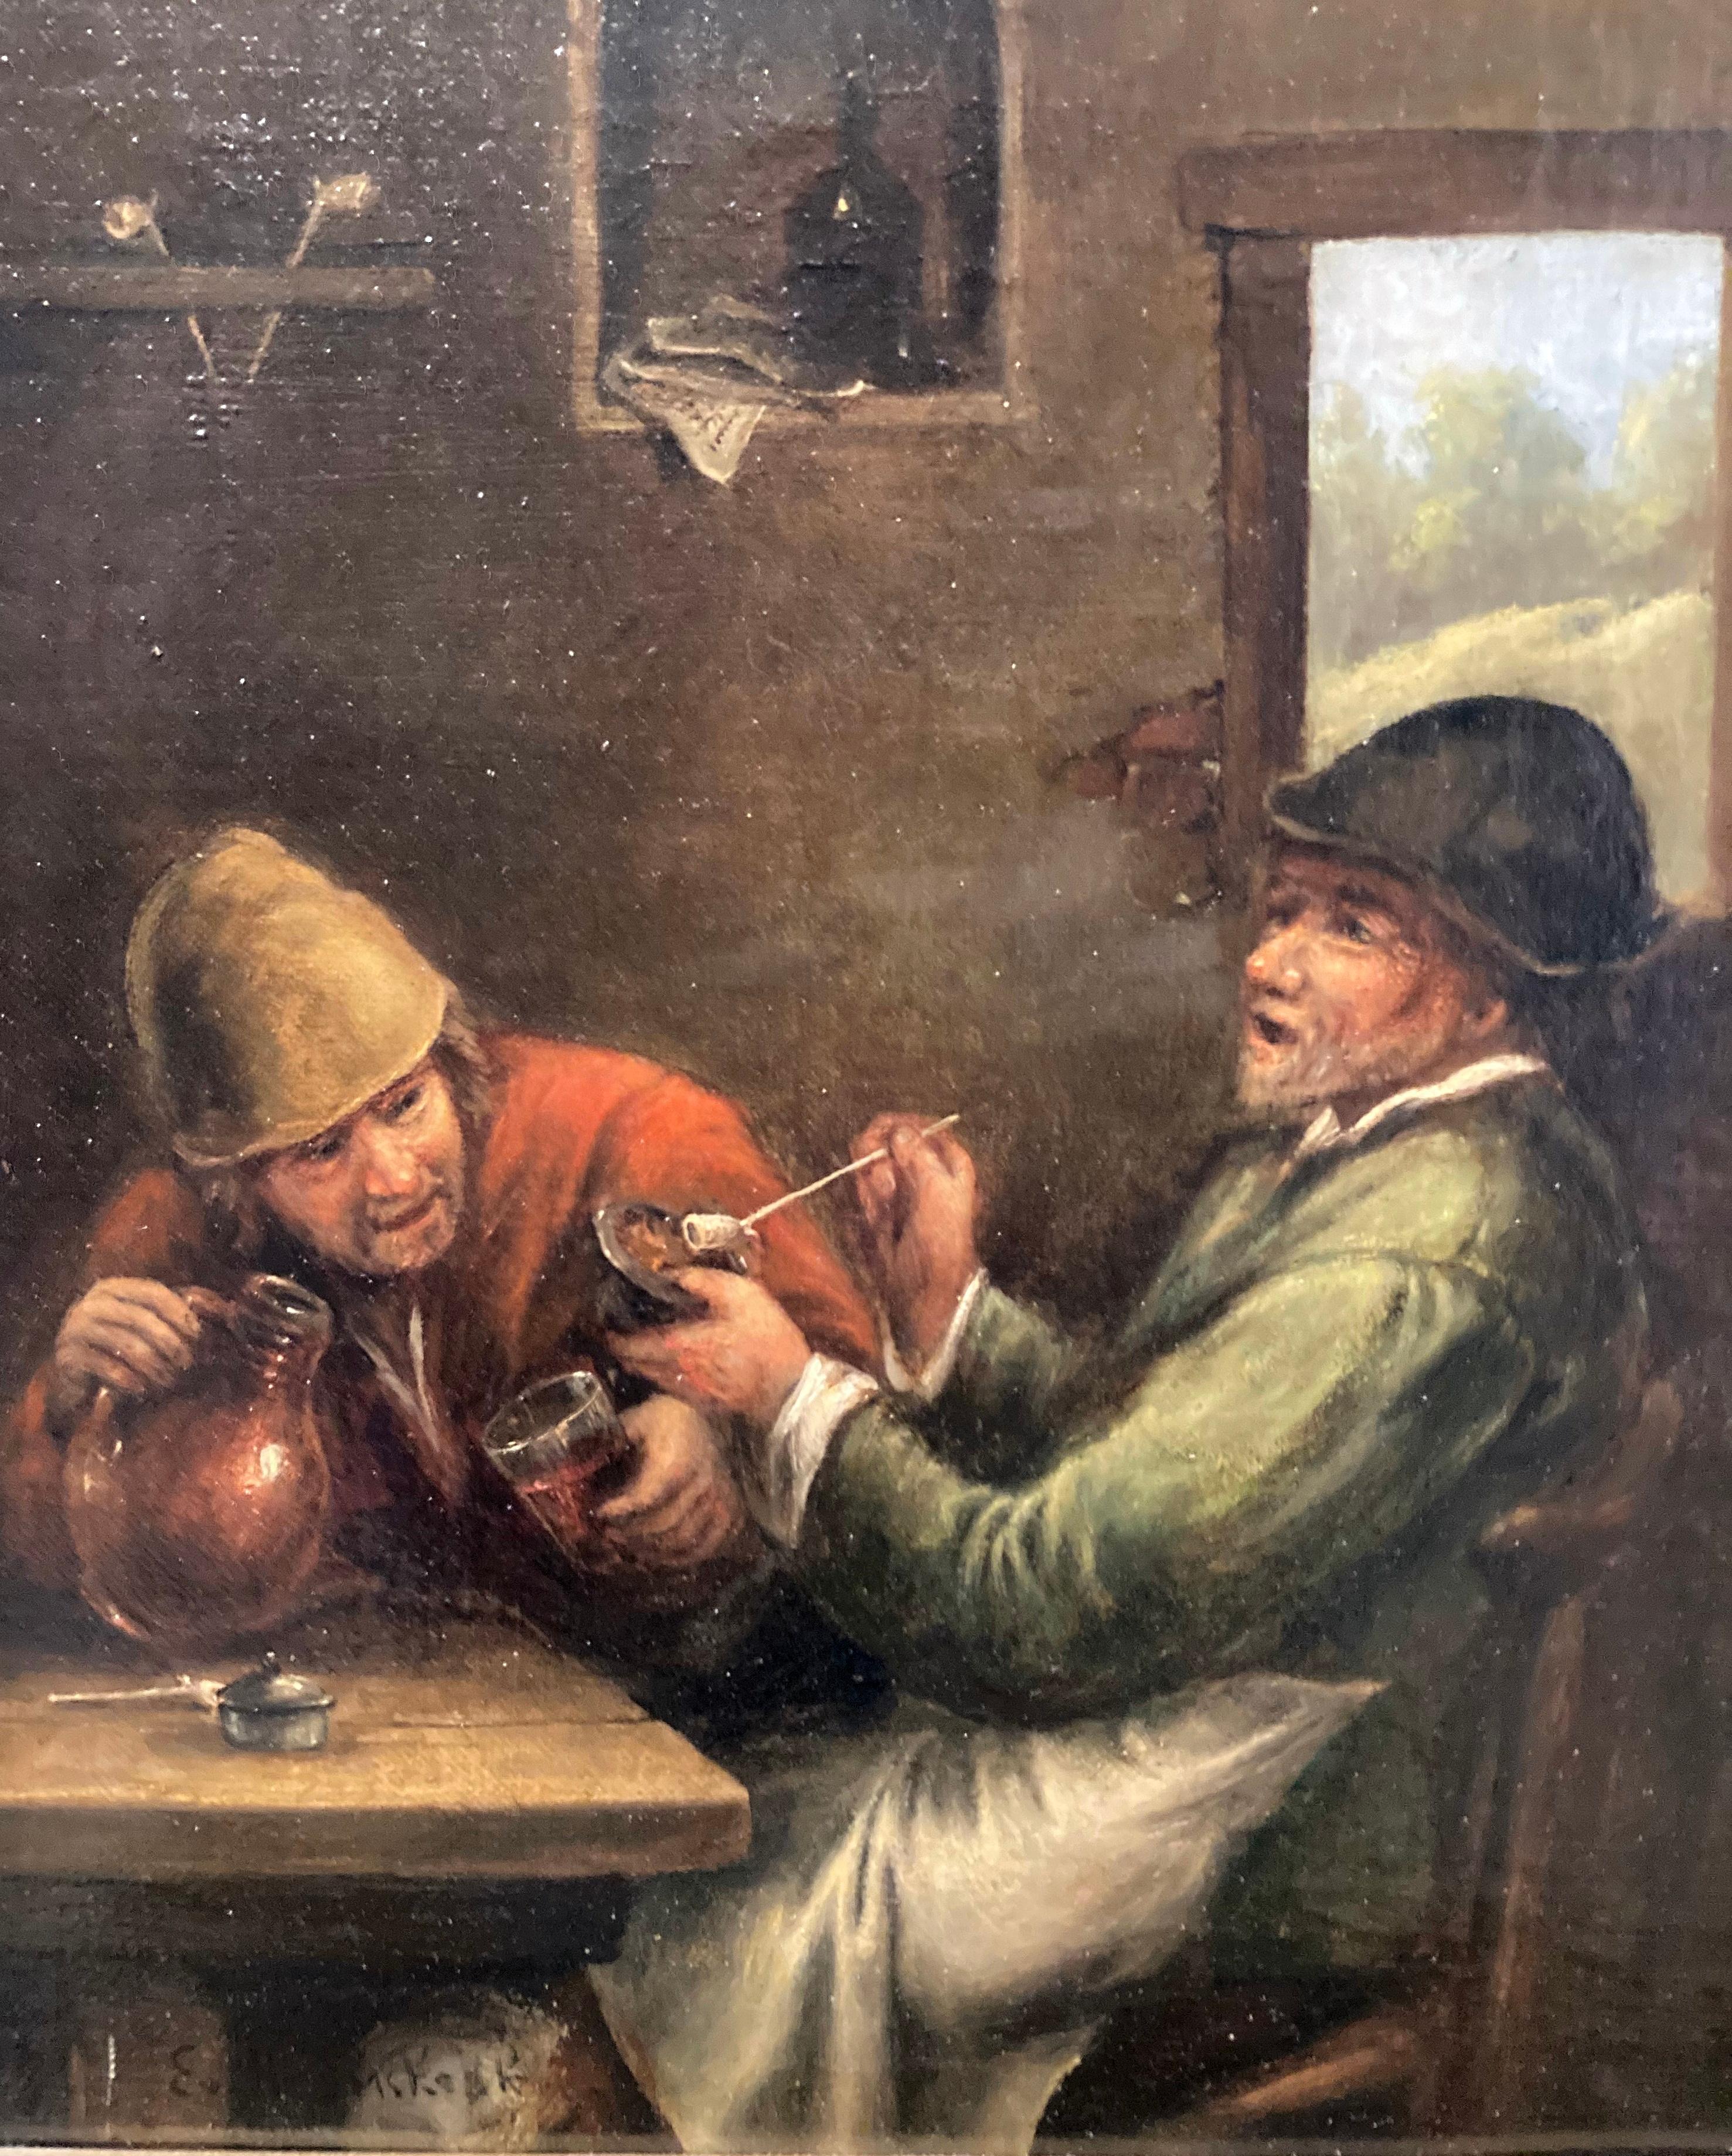 Nach Heemskerck, Zwei alte Männer siiting in einem Gasthaus, Getränkeszene, Alter Meister